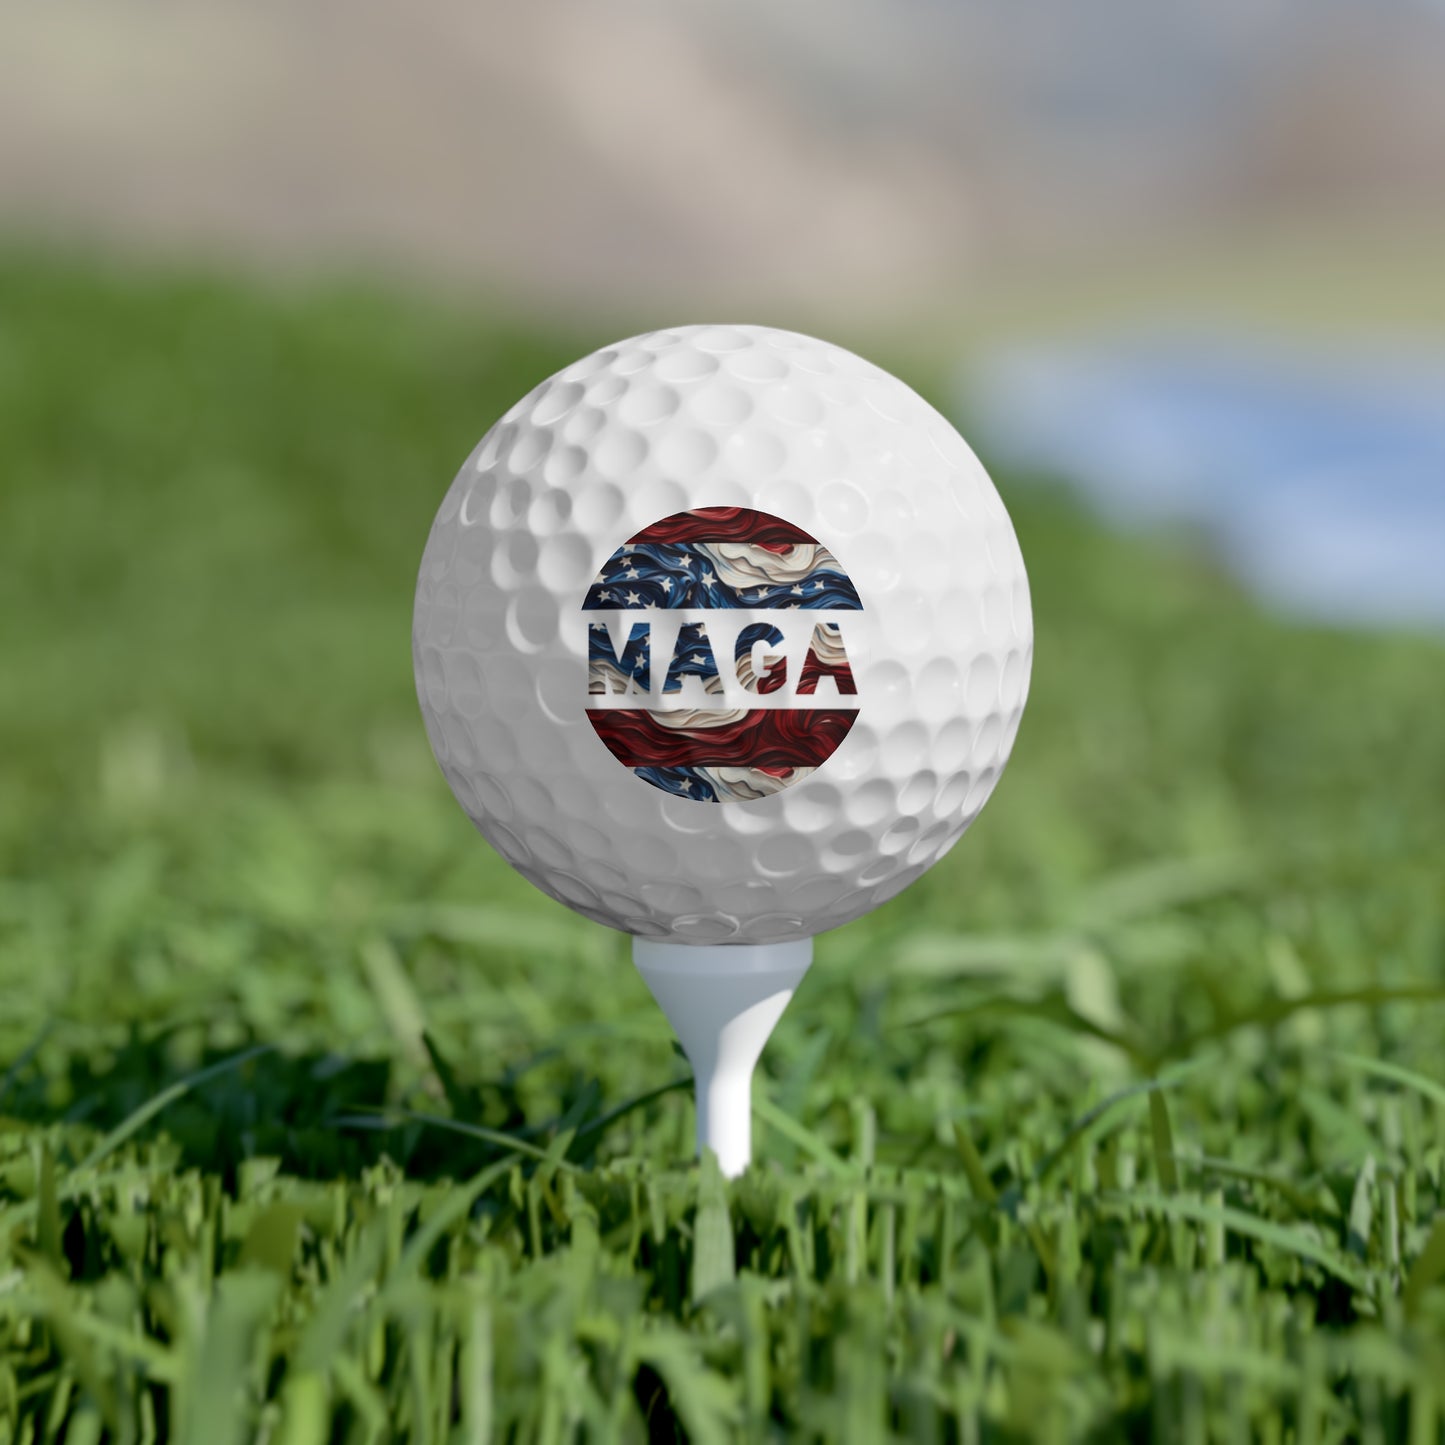 MAGA Rot-weiße und blaue Trump-Golfbälle von hoher Qualität, 6 Stück